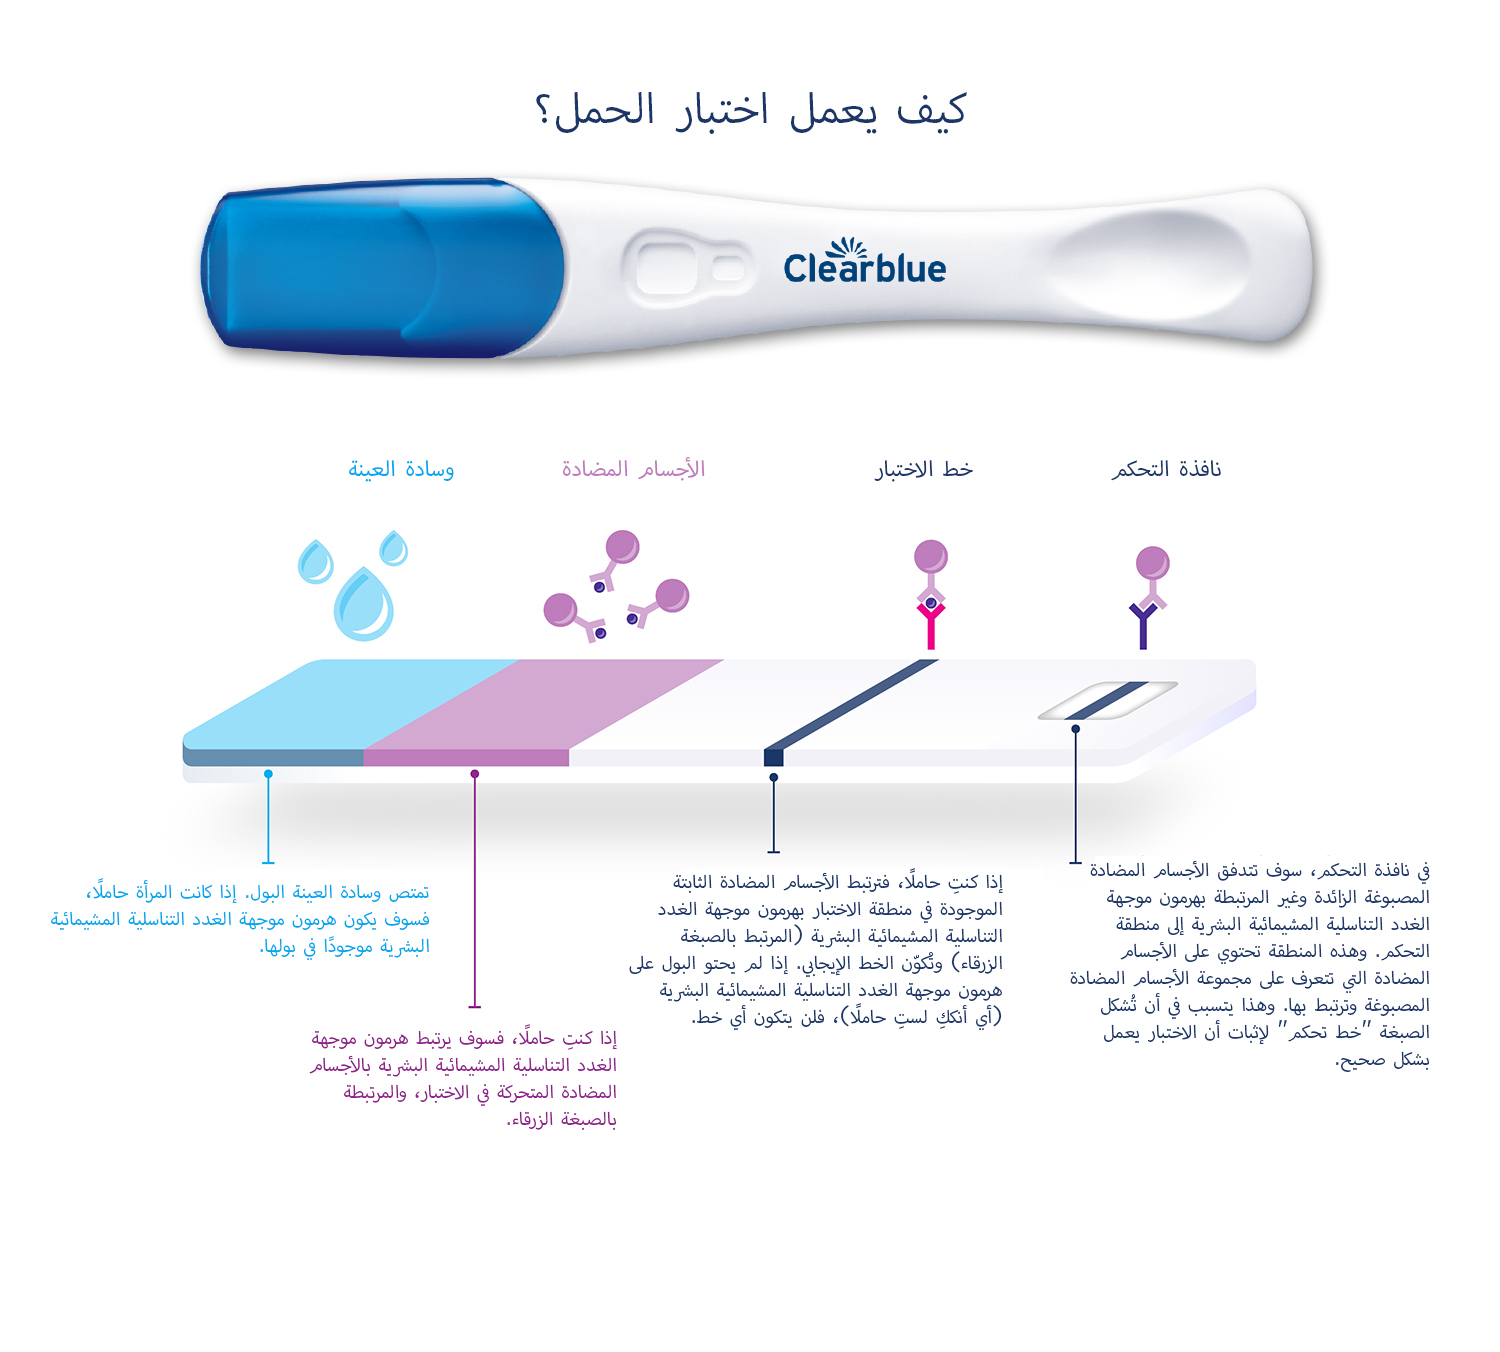 اختبار الحمل Clearblue DIGITAL مصحوبًا برسم يوضح المقطع العرضي للاختبار لإظهار كيفية عمل اختبار الحمل.